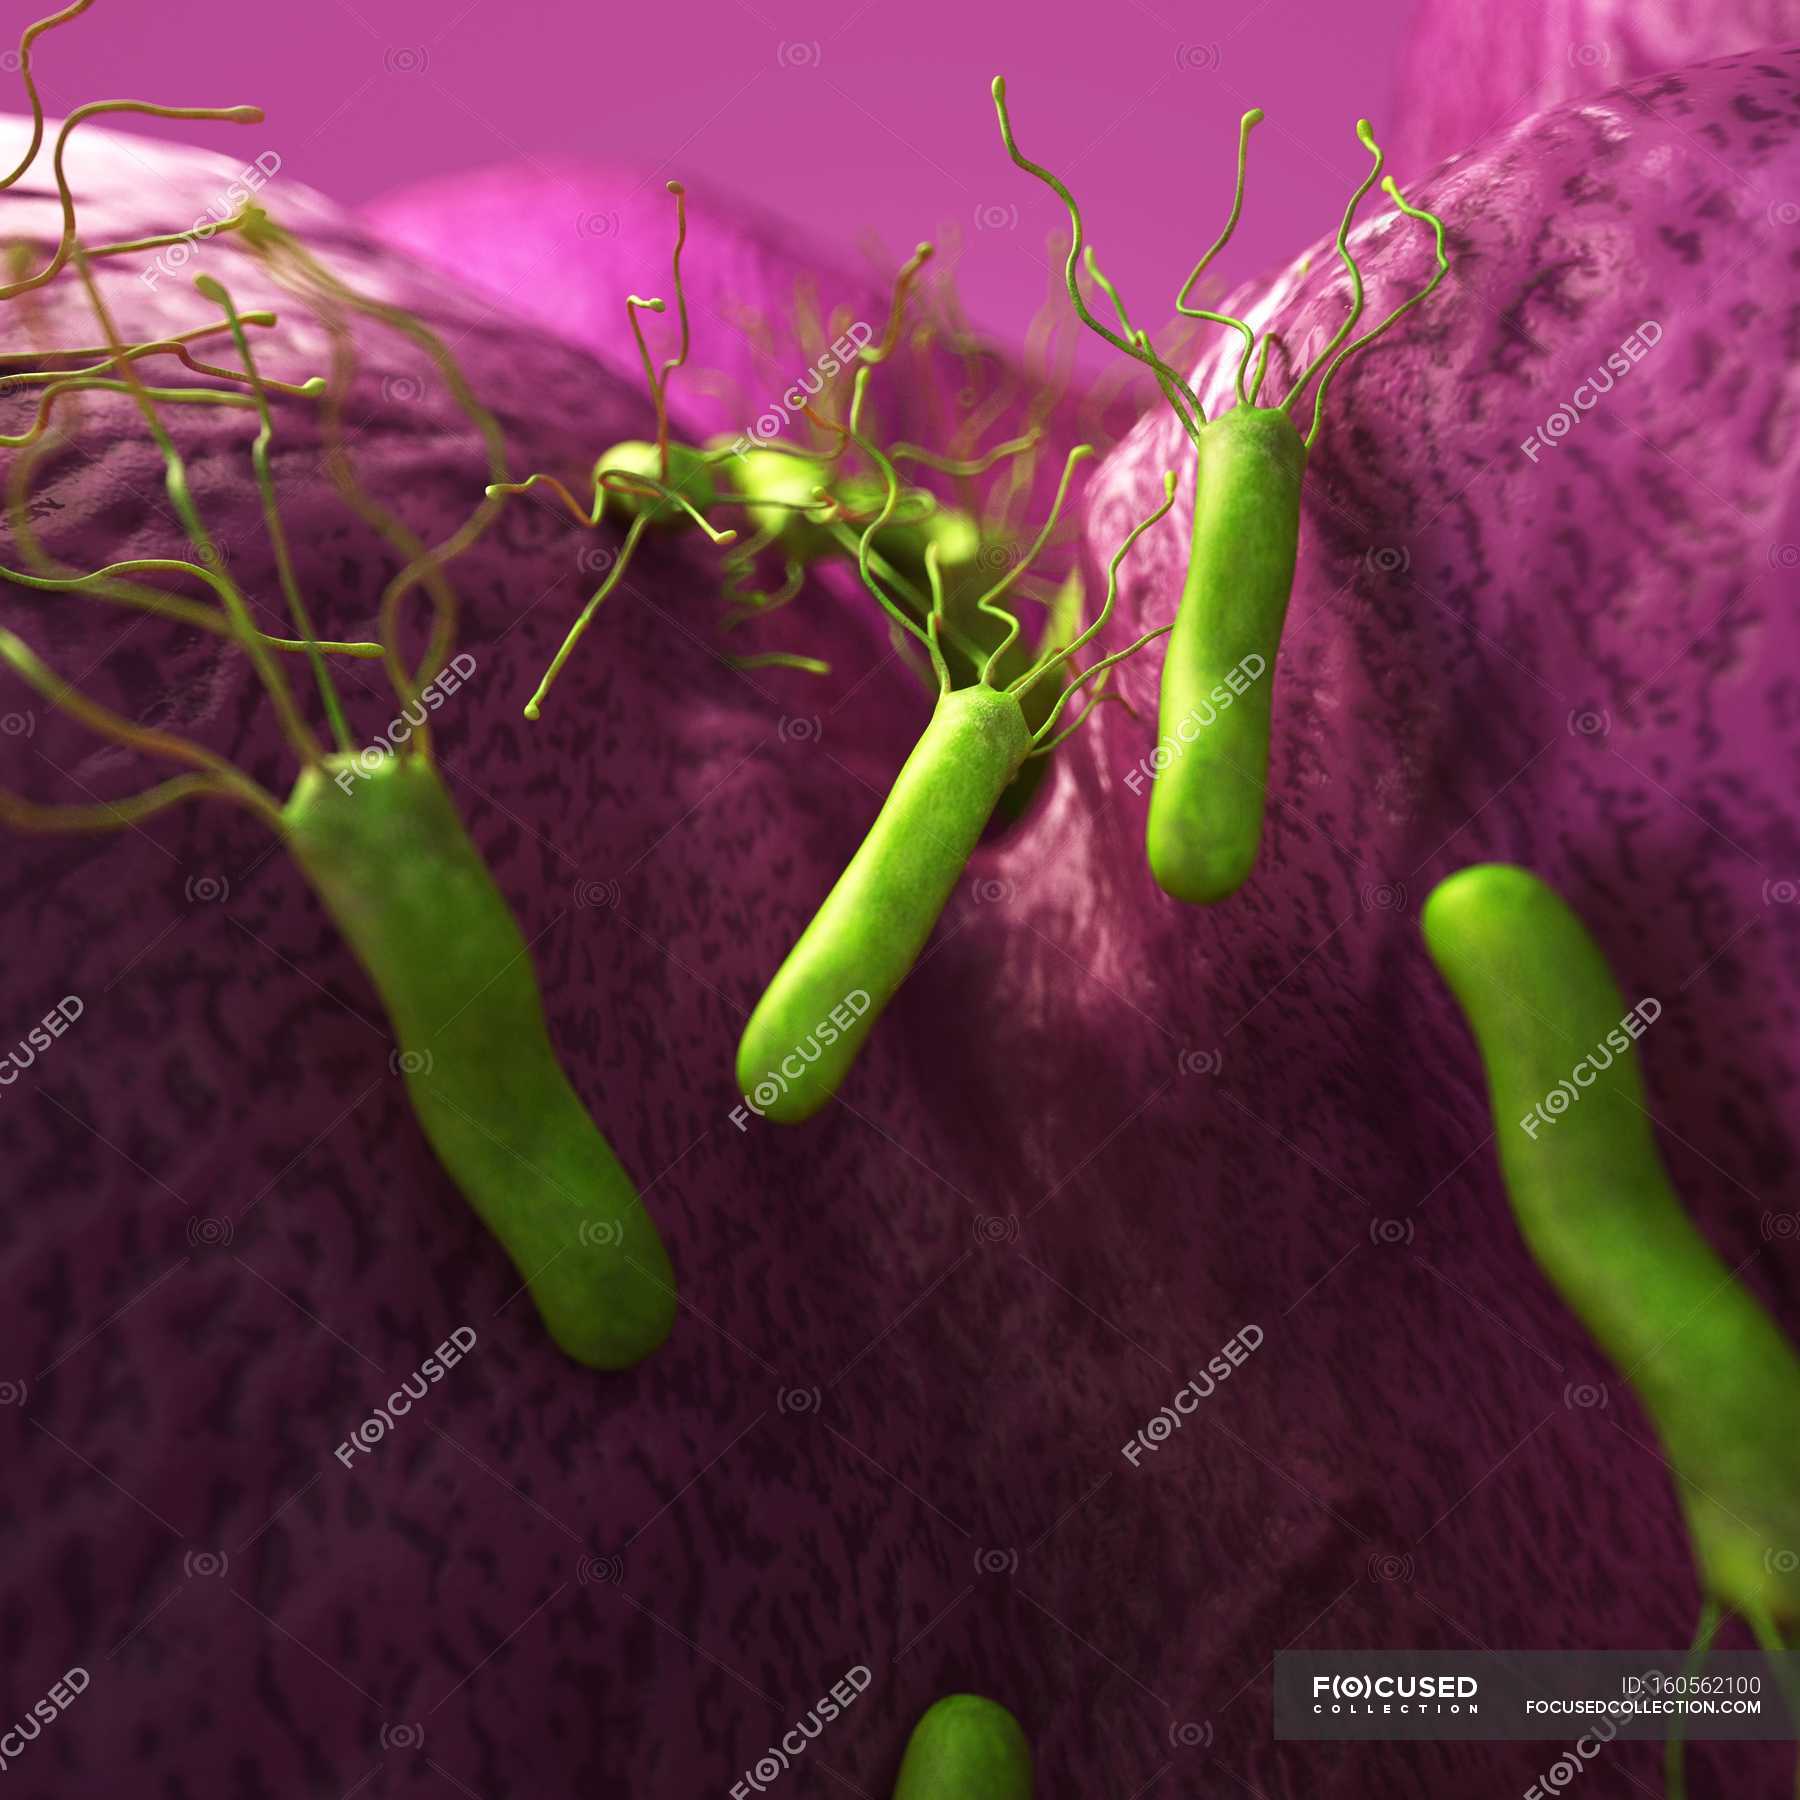 Обезвреживание бактерий слюной. Микроб хеликобактер пилори. Helicobacter pylori изображение бактерии. Хелико бактерия микроб.